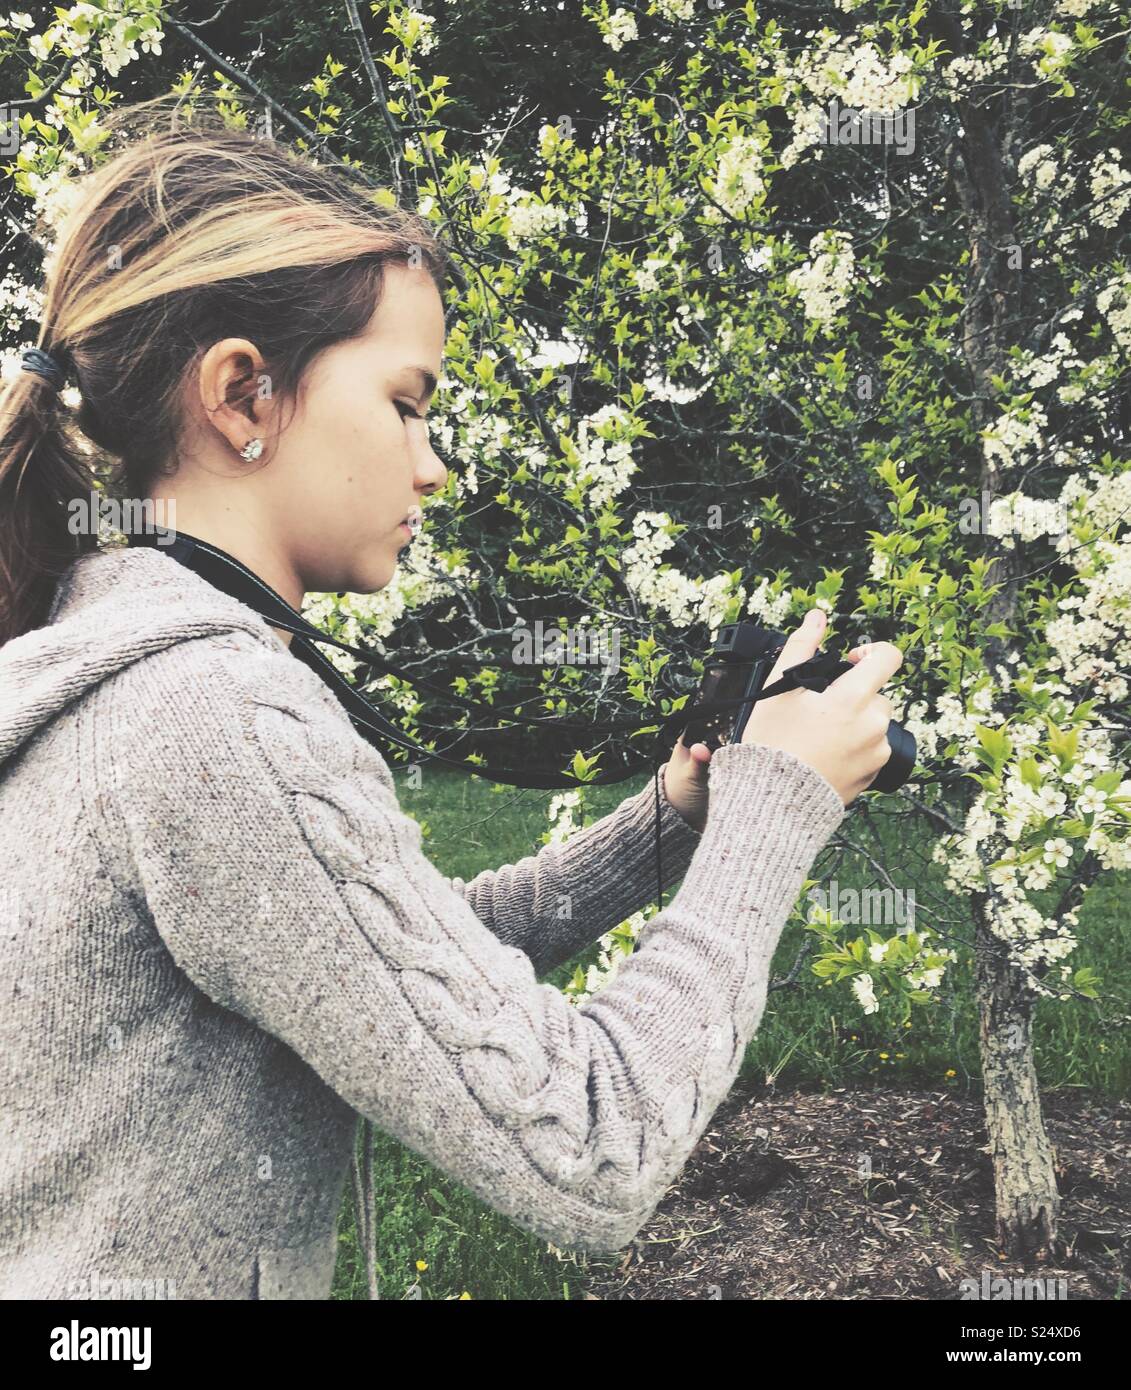 Mädchen ein bild von apple tree Blüten mit Point-and-Shoot-Kamera Stockfoto